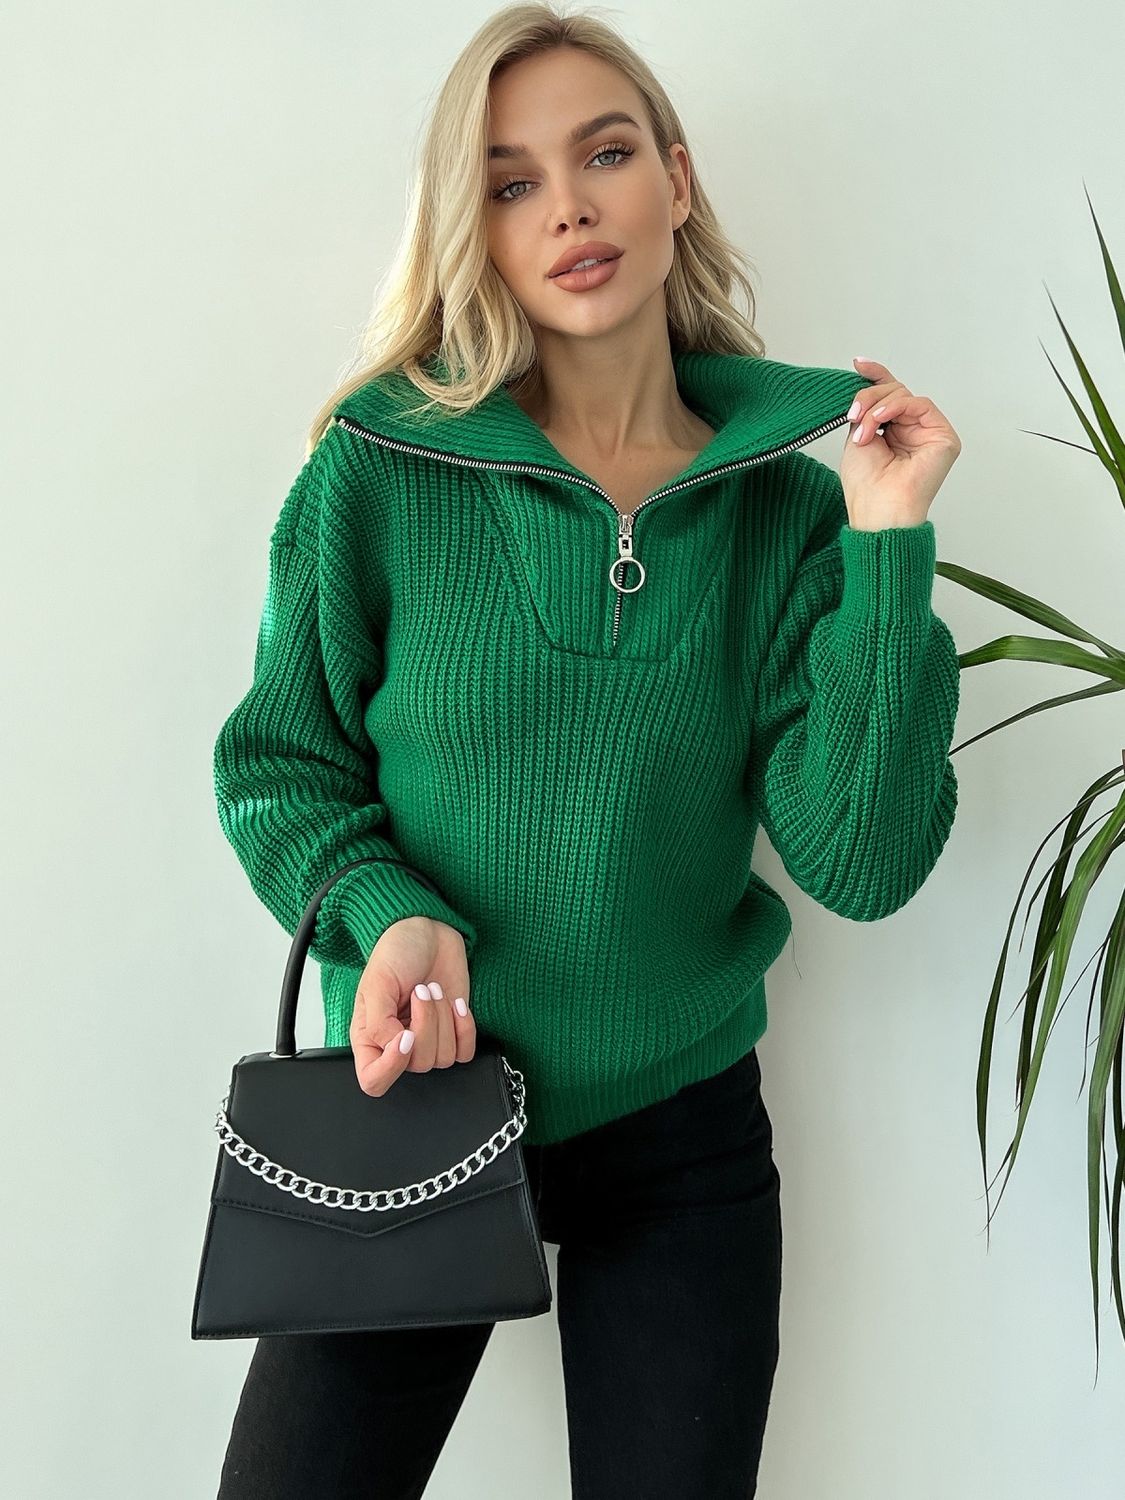 Теплый вязаный свитер оверсайз зеленого цвета - фото